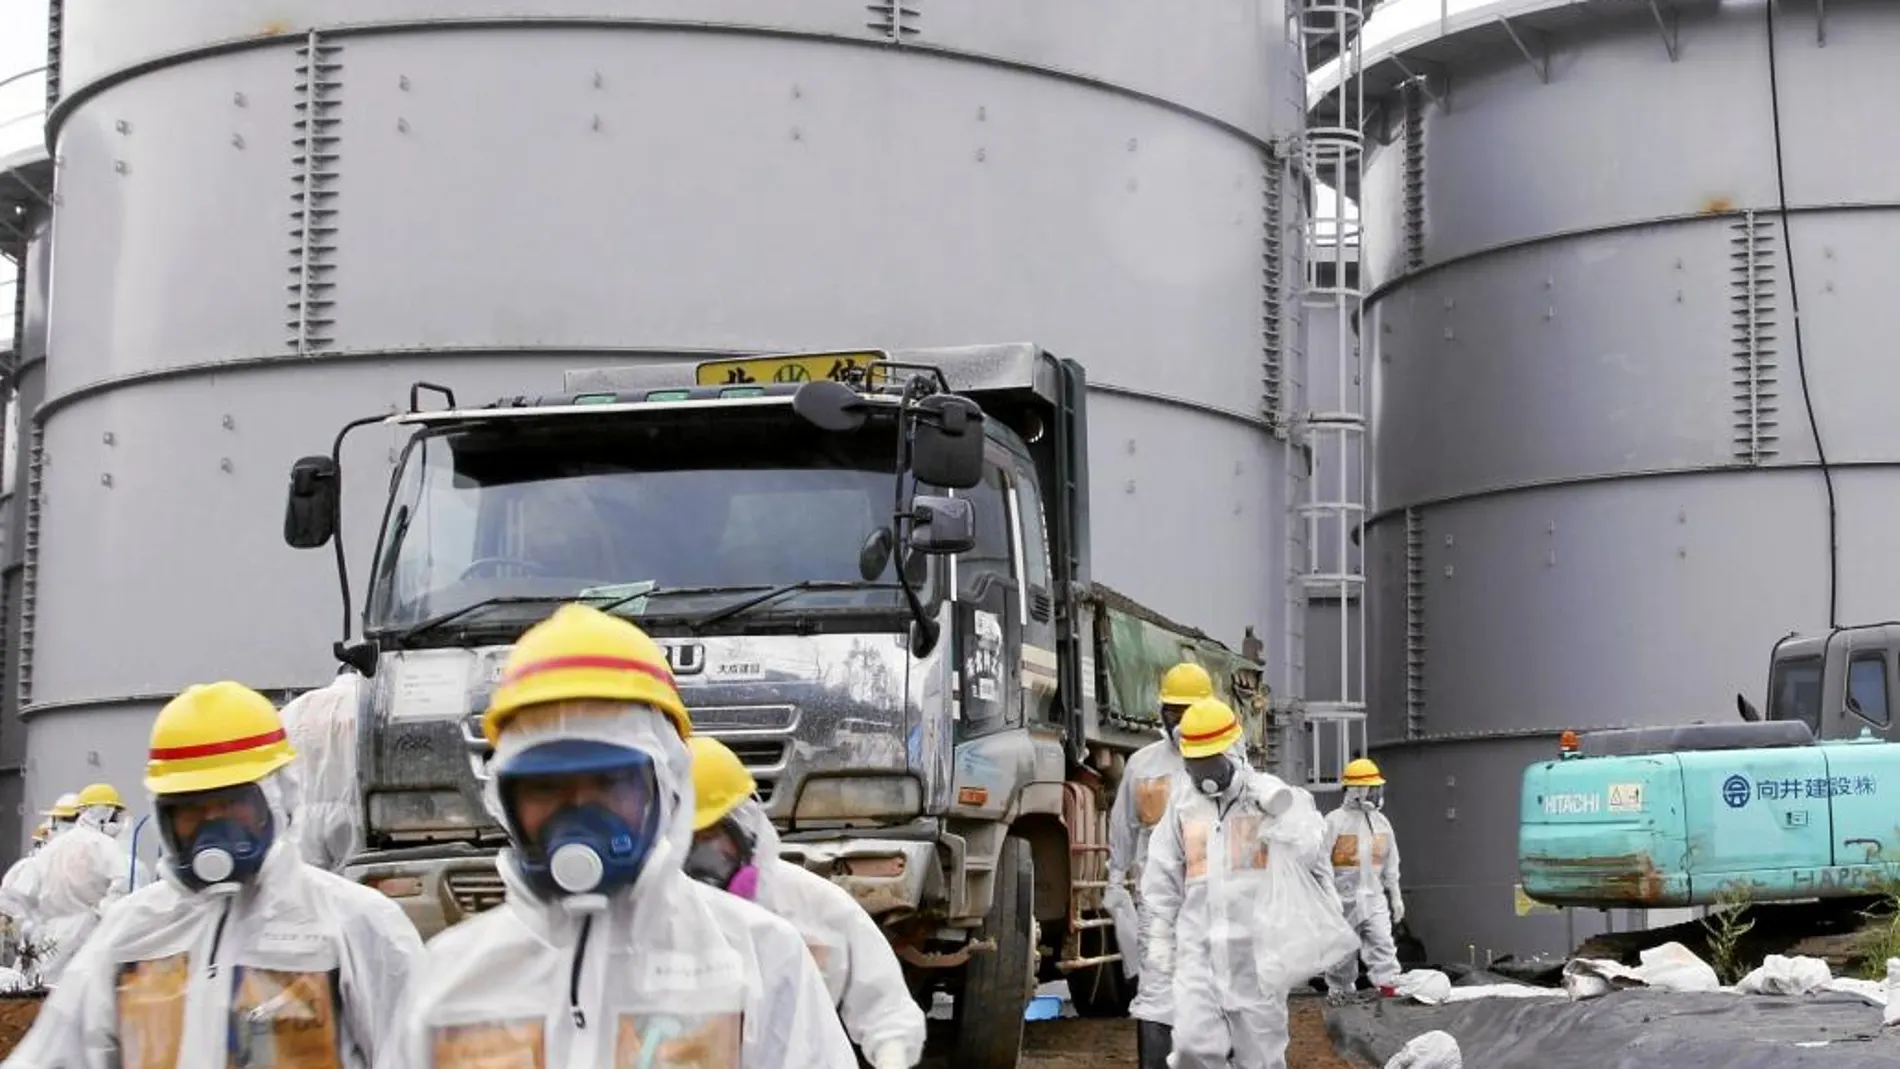 El 11 de marzo de 2011, un tsunami provocó una catástrofe en Fukushima